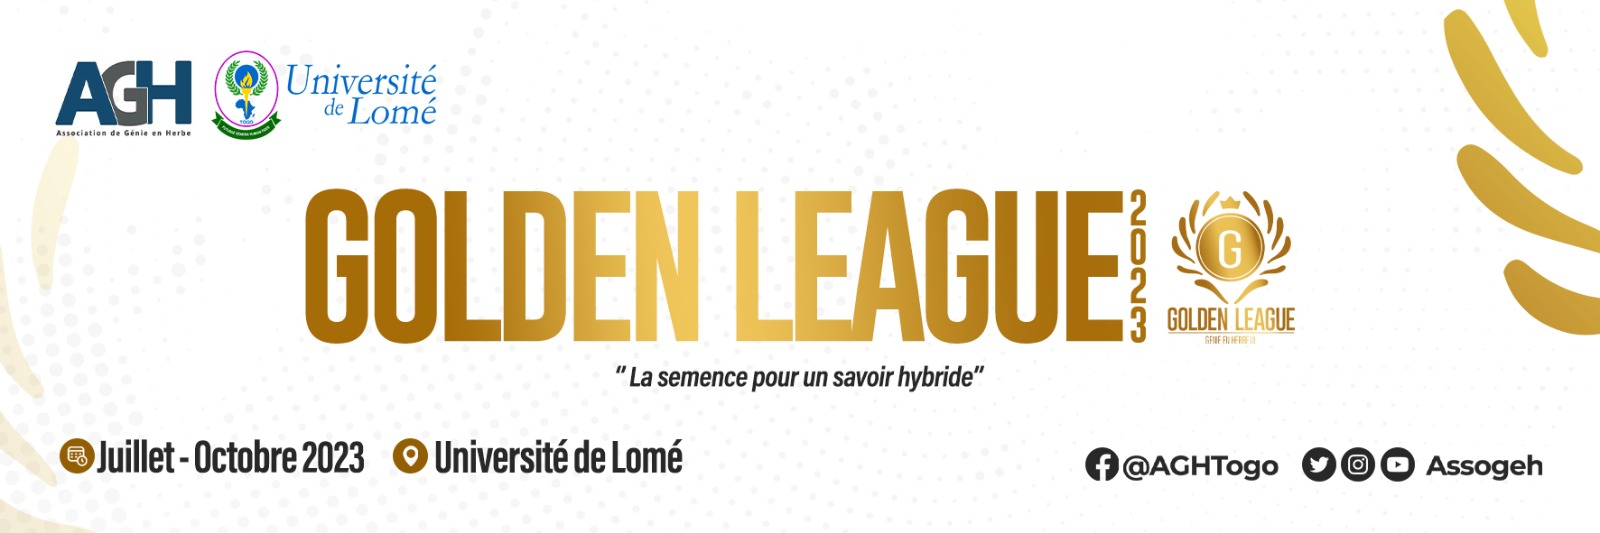 Golden League 2023 - Banière